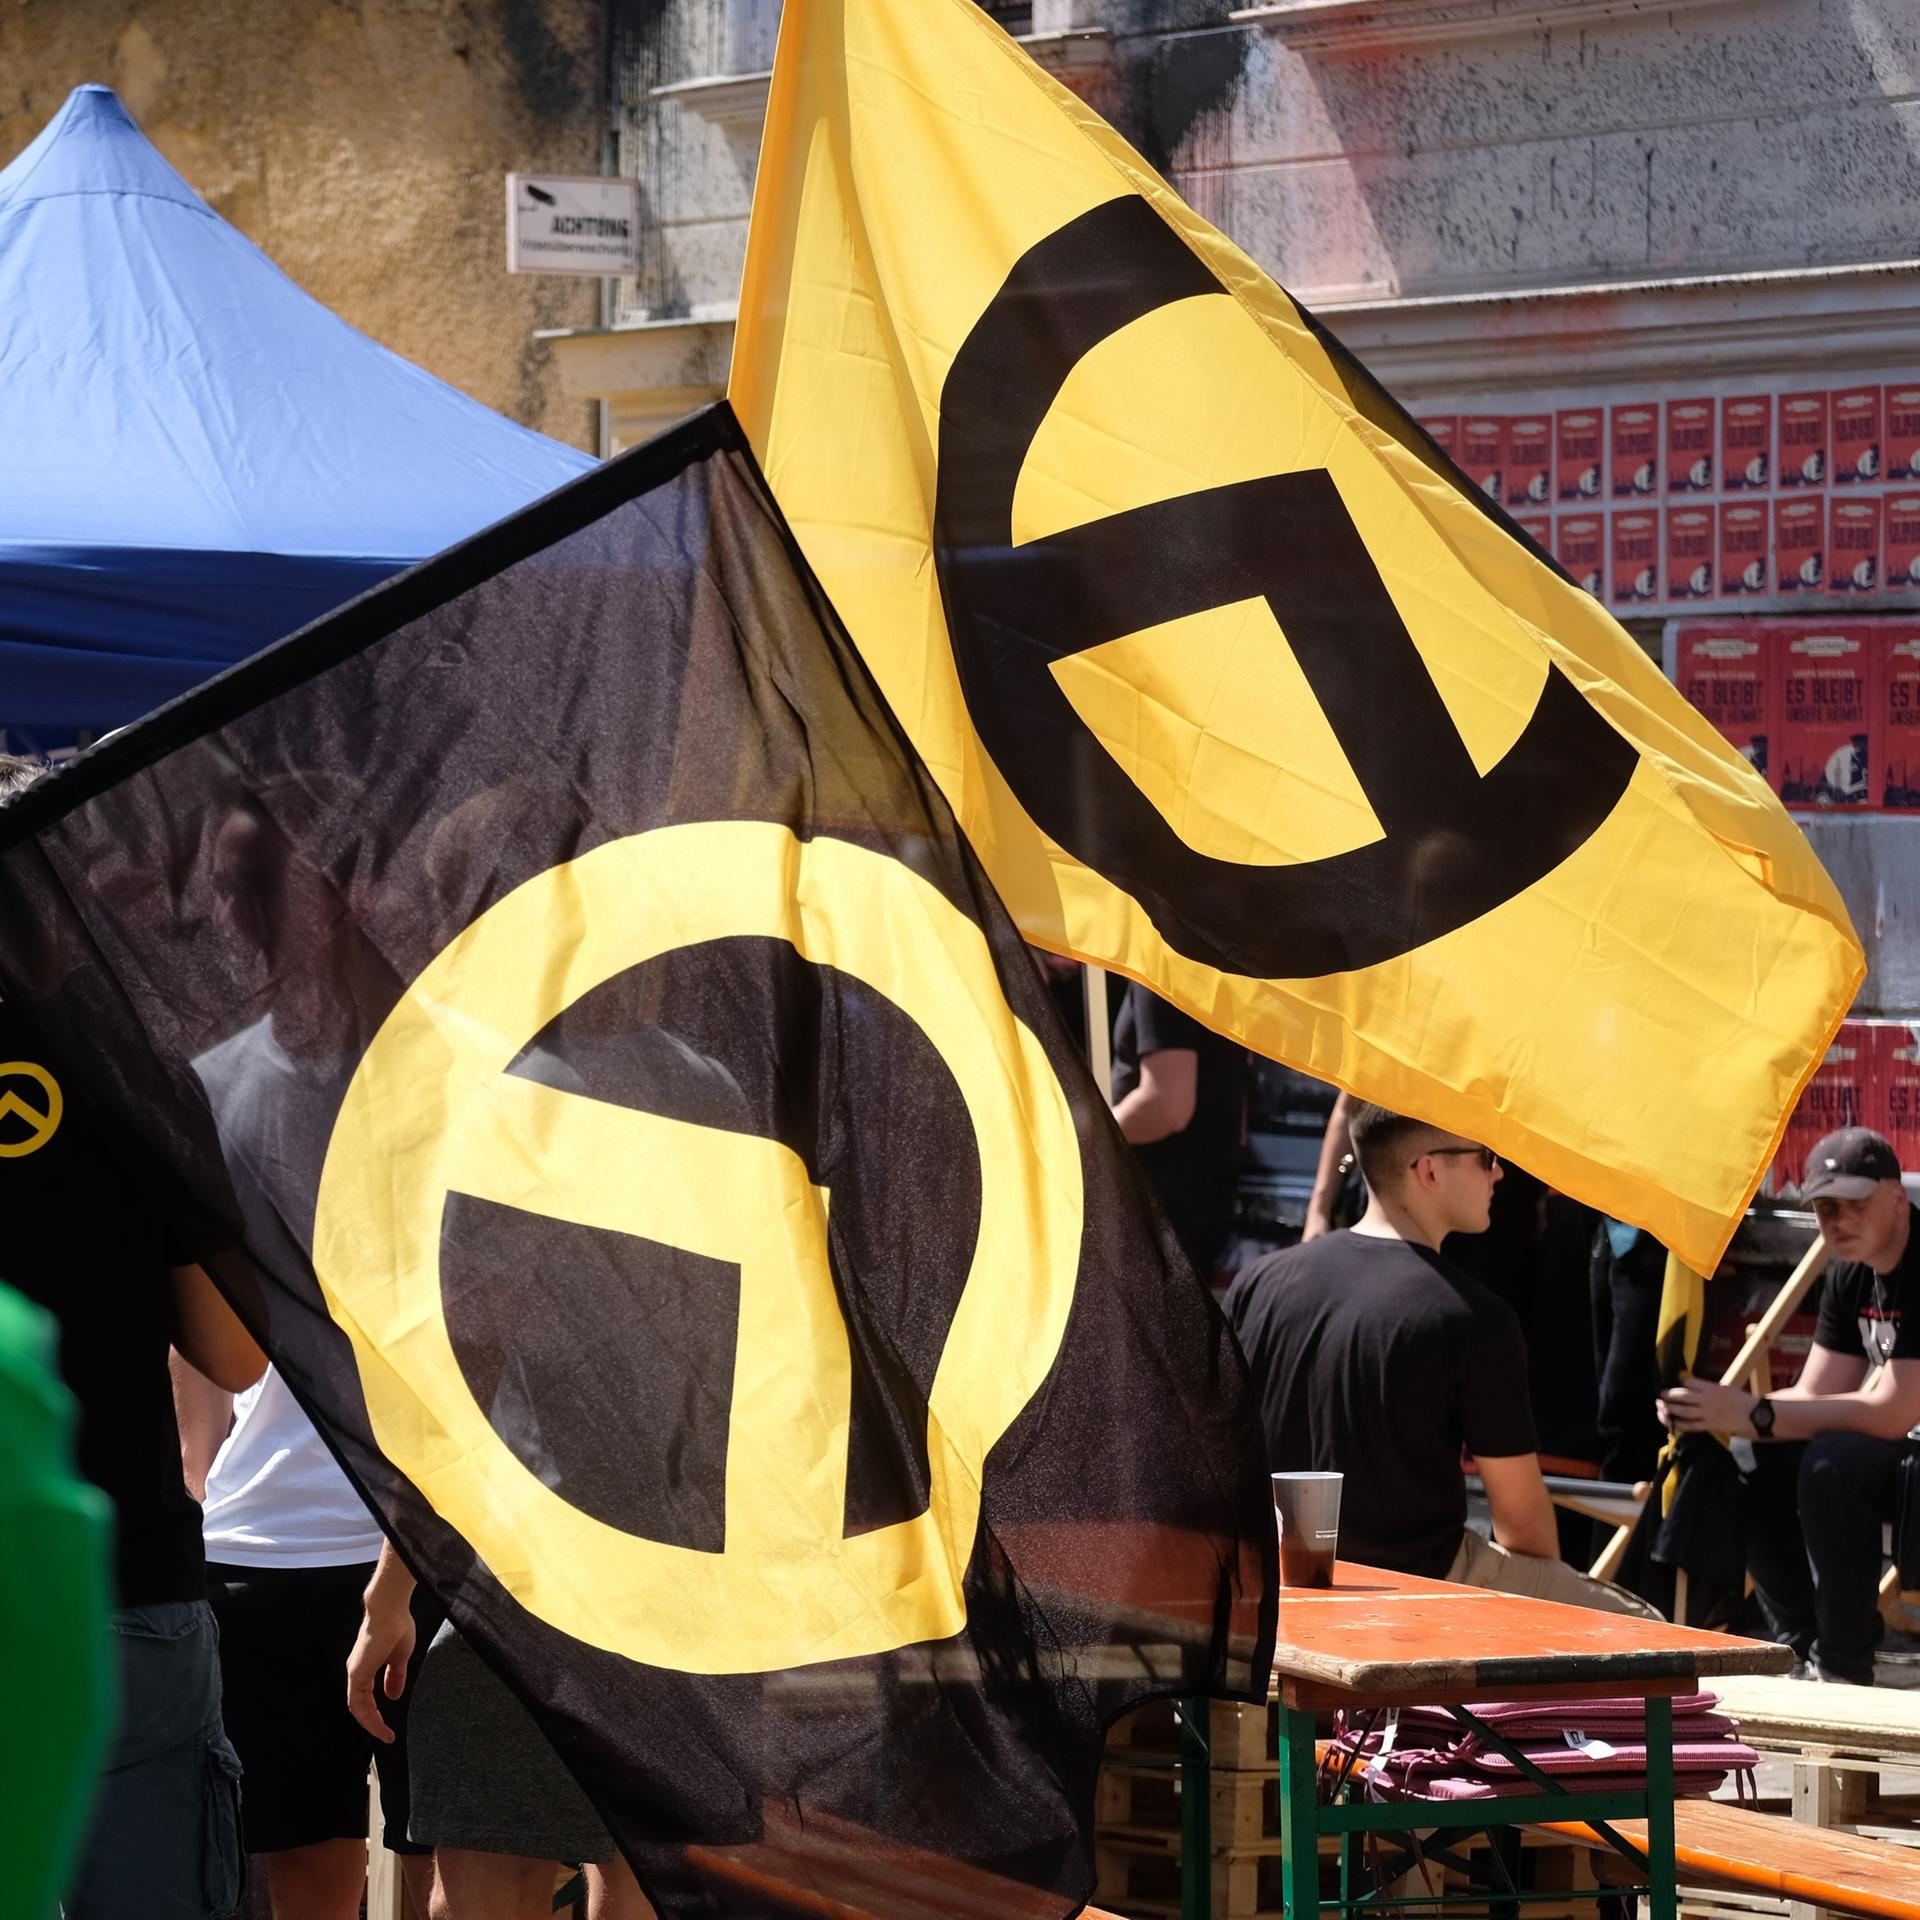 Rechtsextremismus - Wie die Identitäre Bewegung die FPÖ und AfD beeinflusst